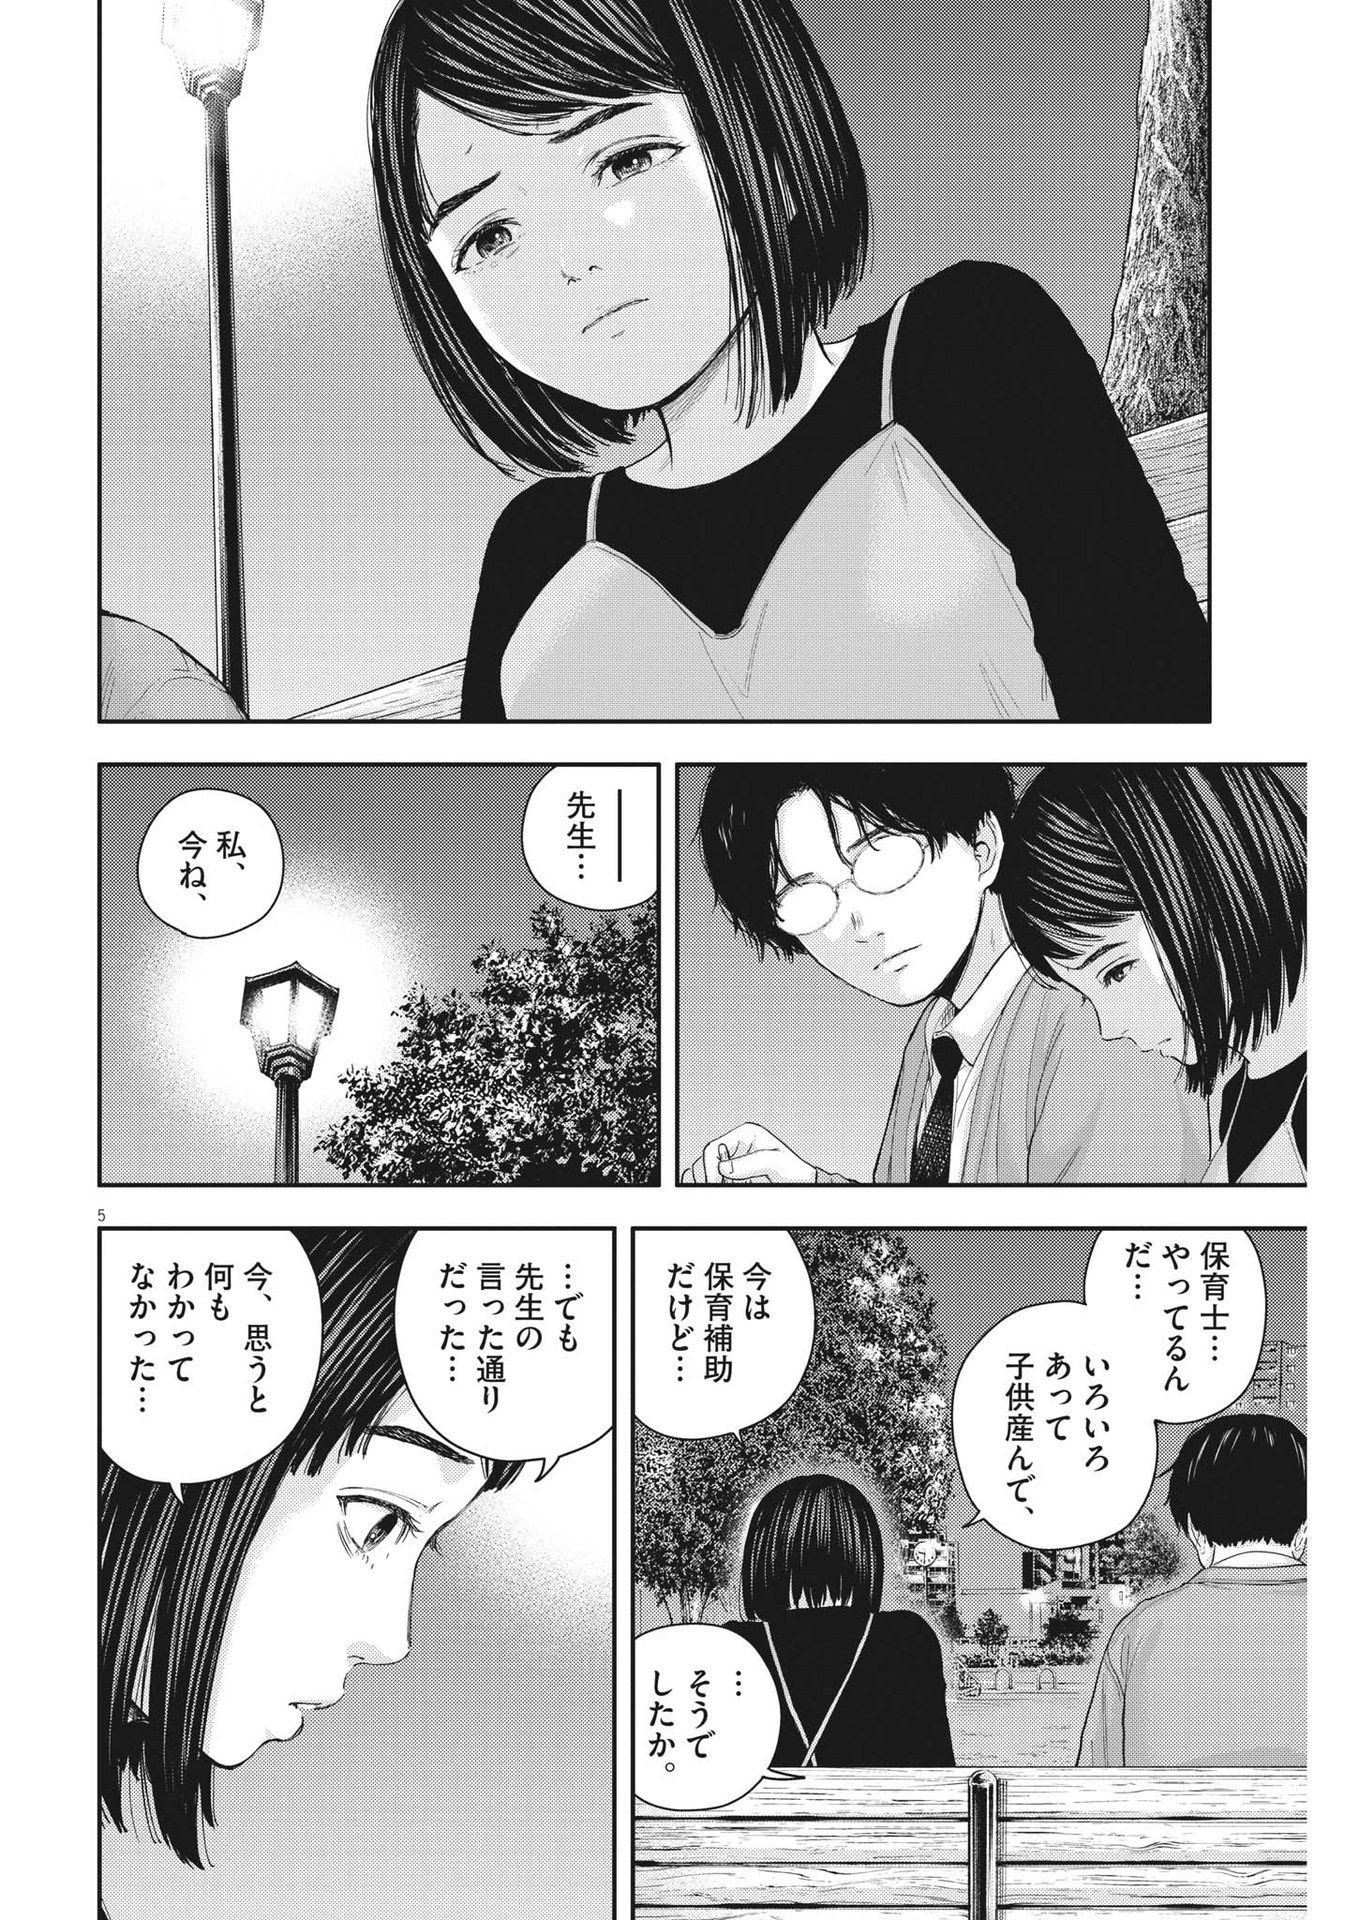 Yumenashi-sensei no Shinroshidou - Chapter 24 - Page 5